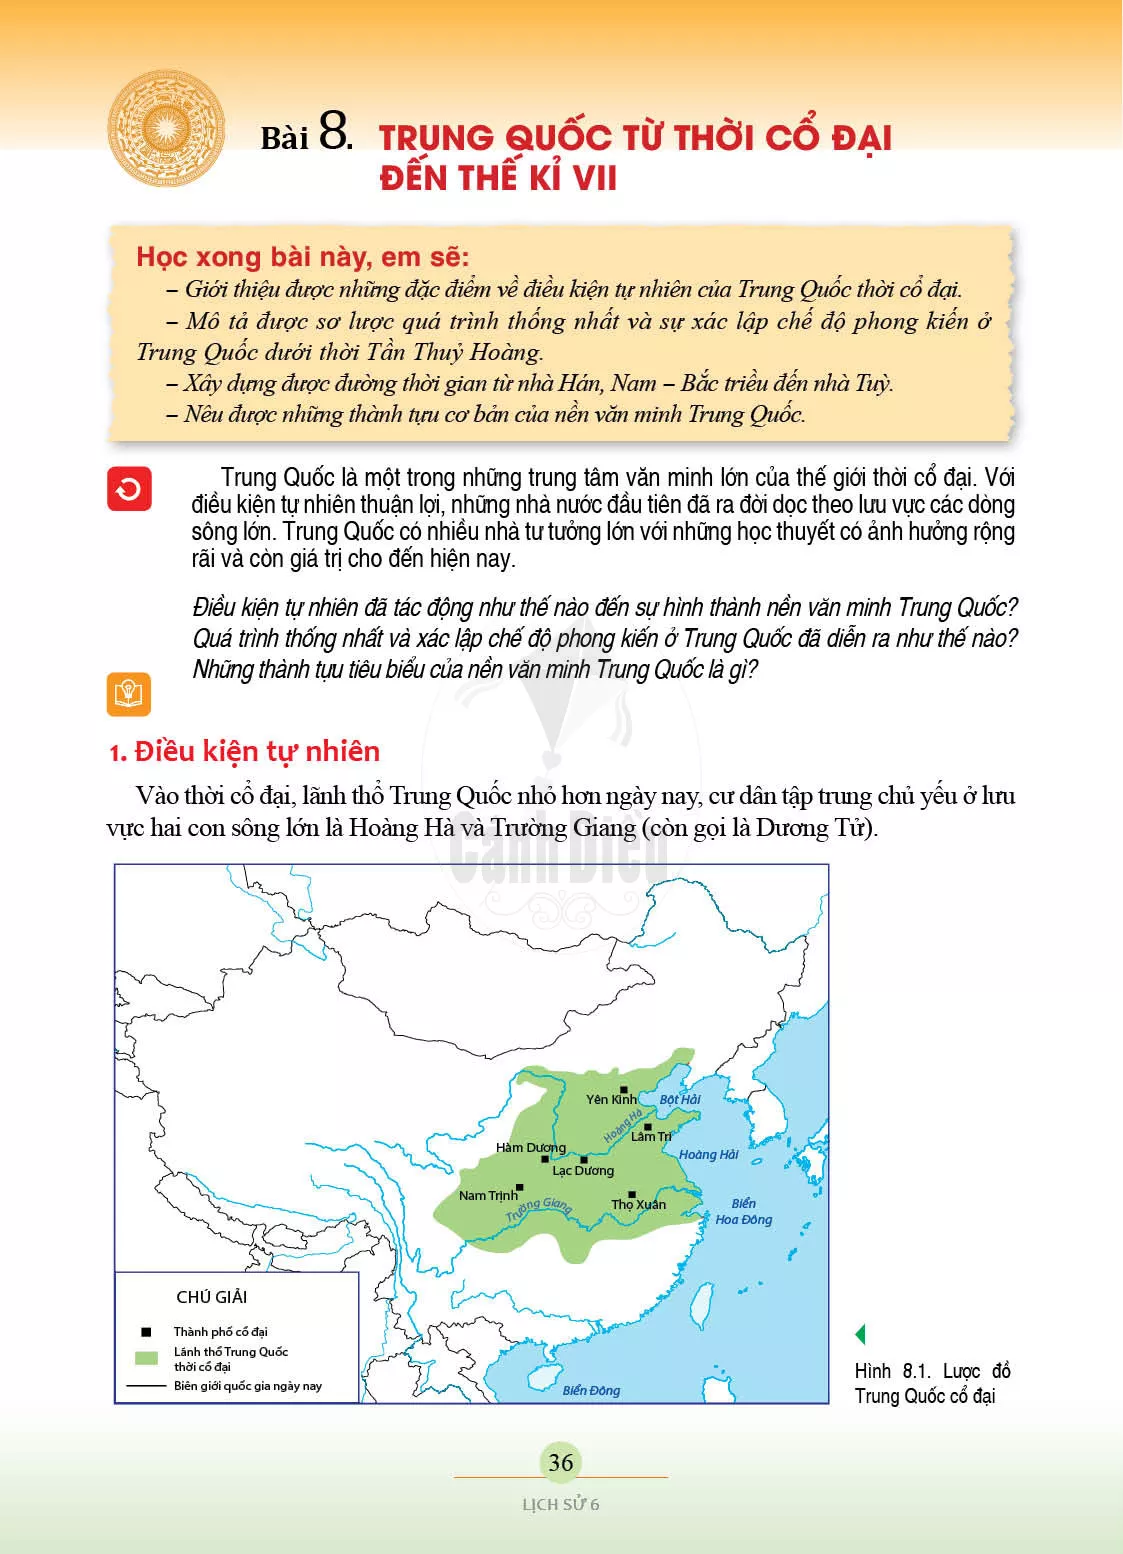 Bài 8. Trung Quốc từ thời cổ đại den the ki VII